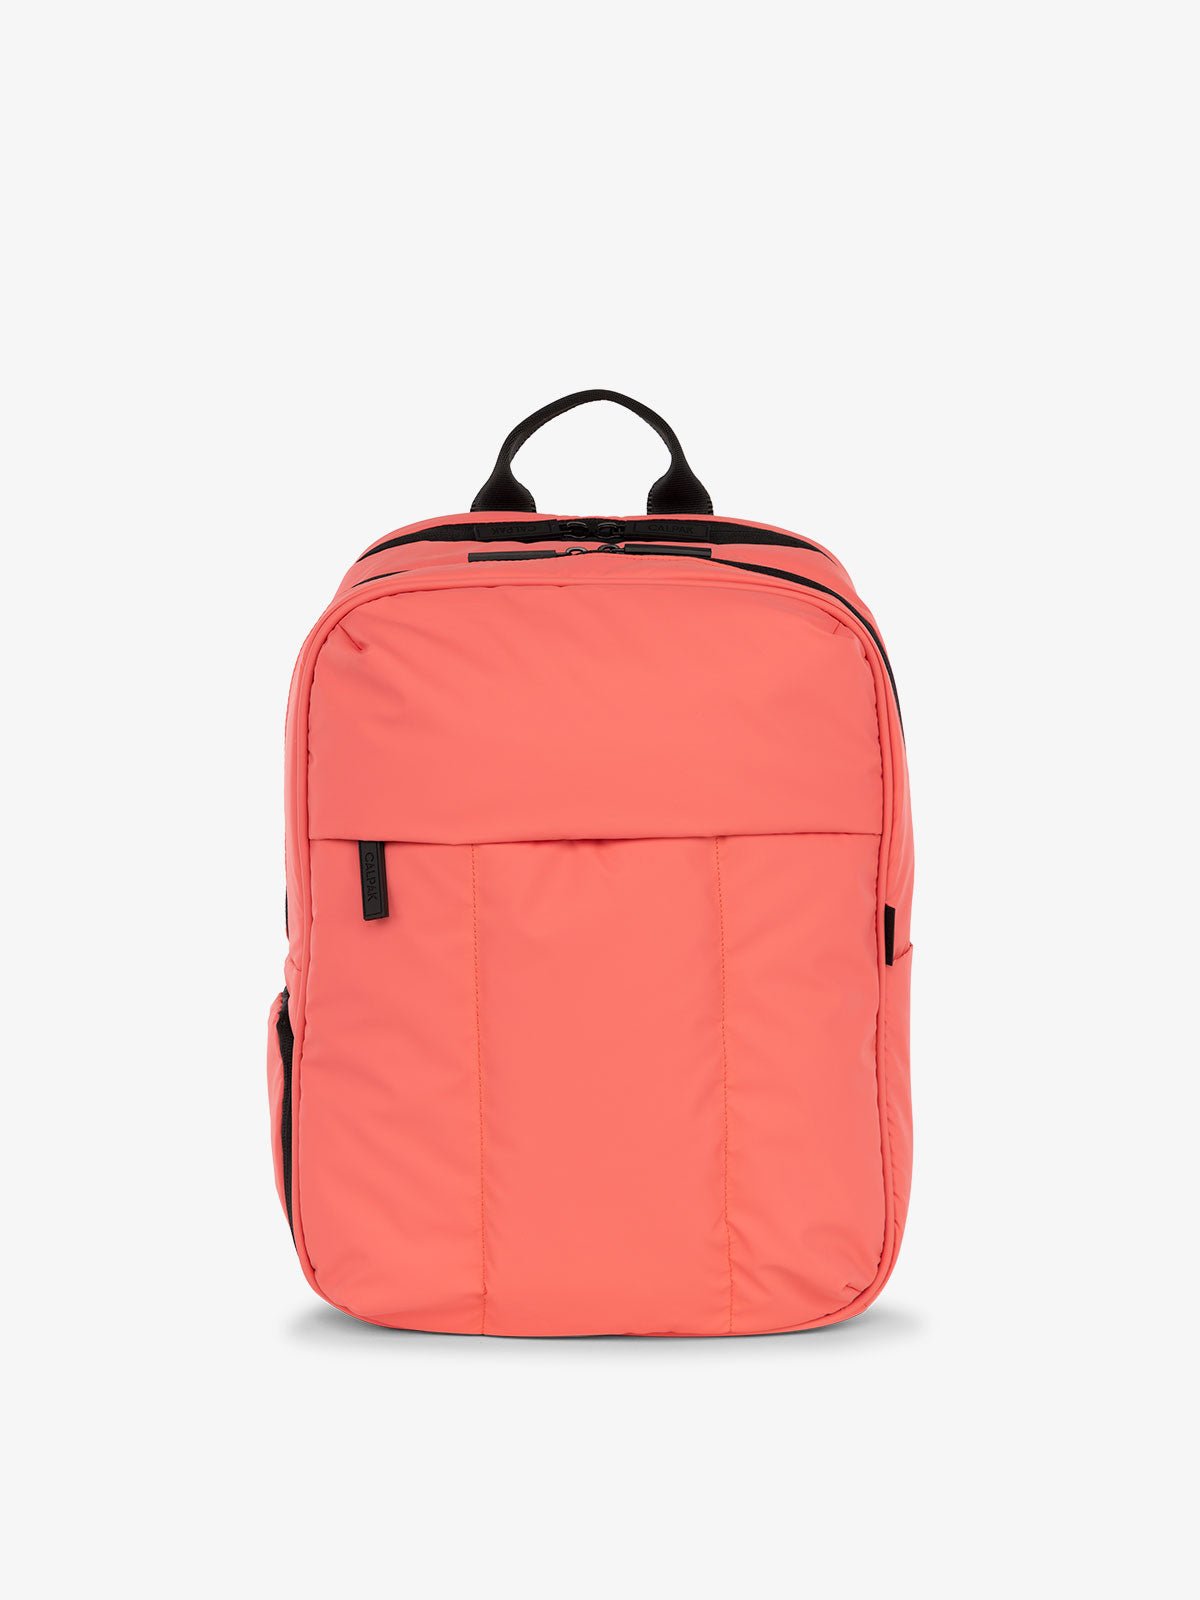 CALPAK Luka Laptop Backpack for school in watermelon